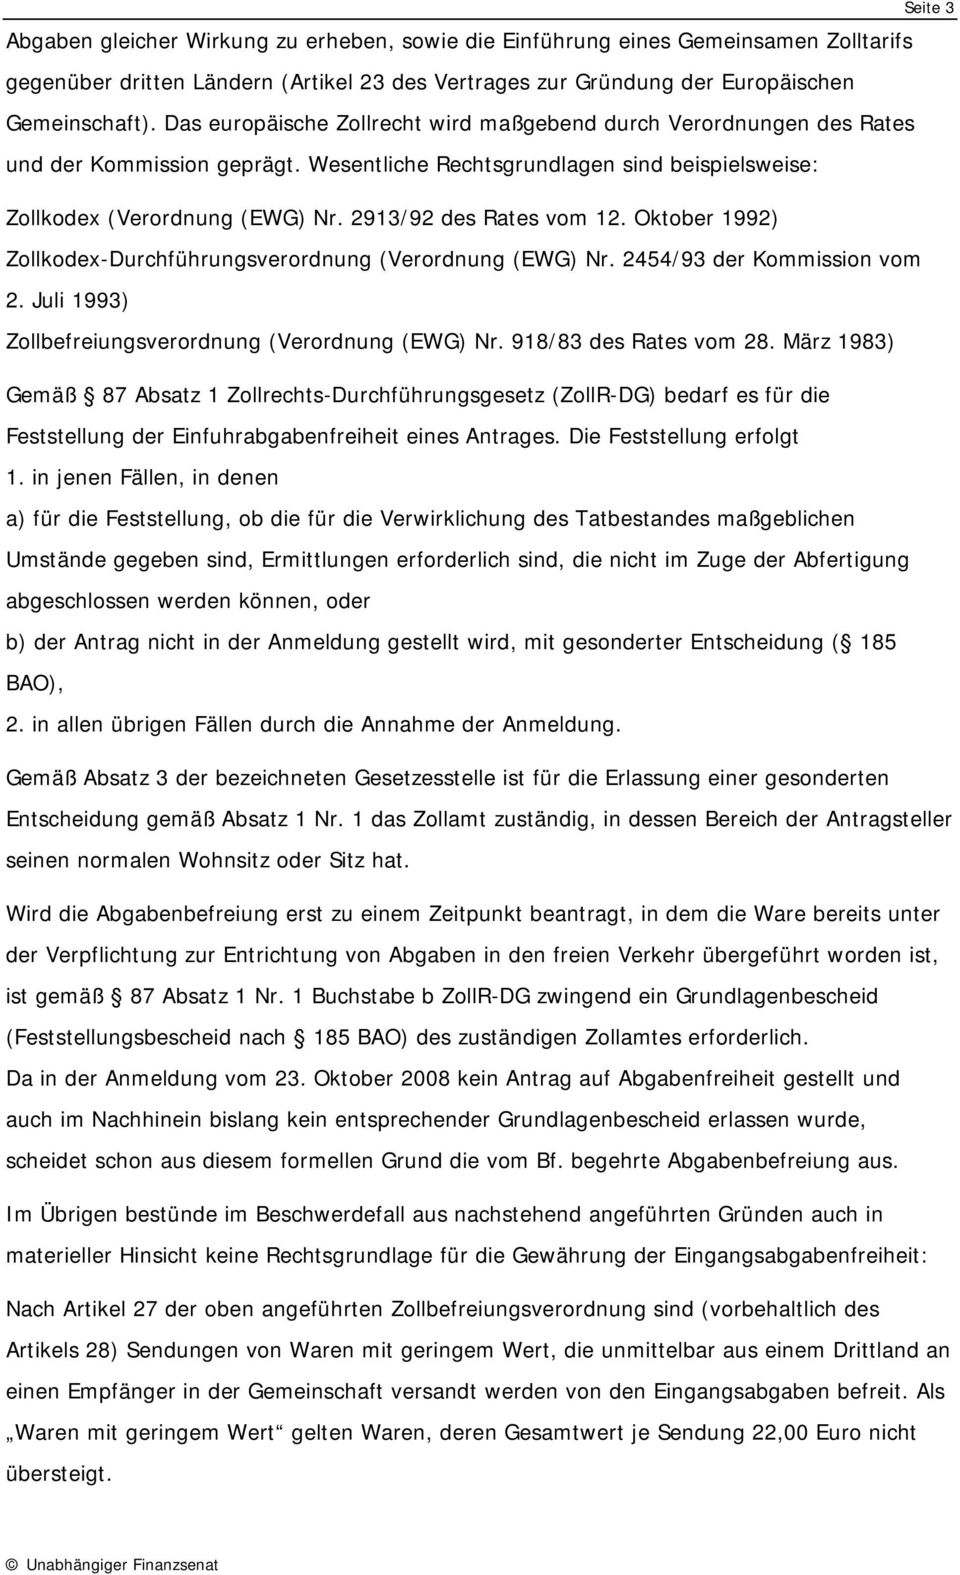 2913/92 des Rates vom 12. Oktober 1992) Zollkodex-Durchführungsverordnung (Verordnung (EWG) Nr. 2454/93 der Kommission vom 2. Juli 1993) Zollbefreiungsverordnung (Verordnung (EWG) Nr.